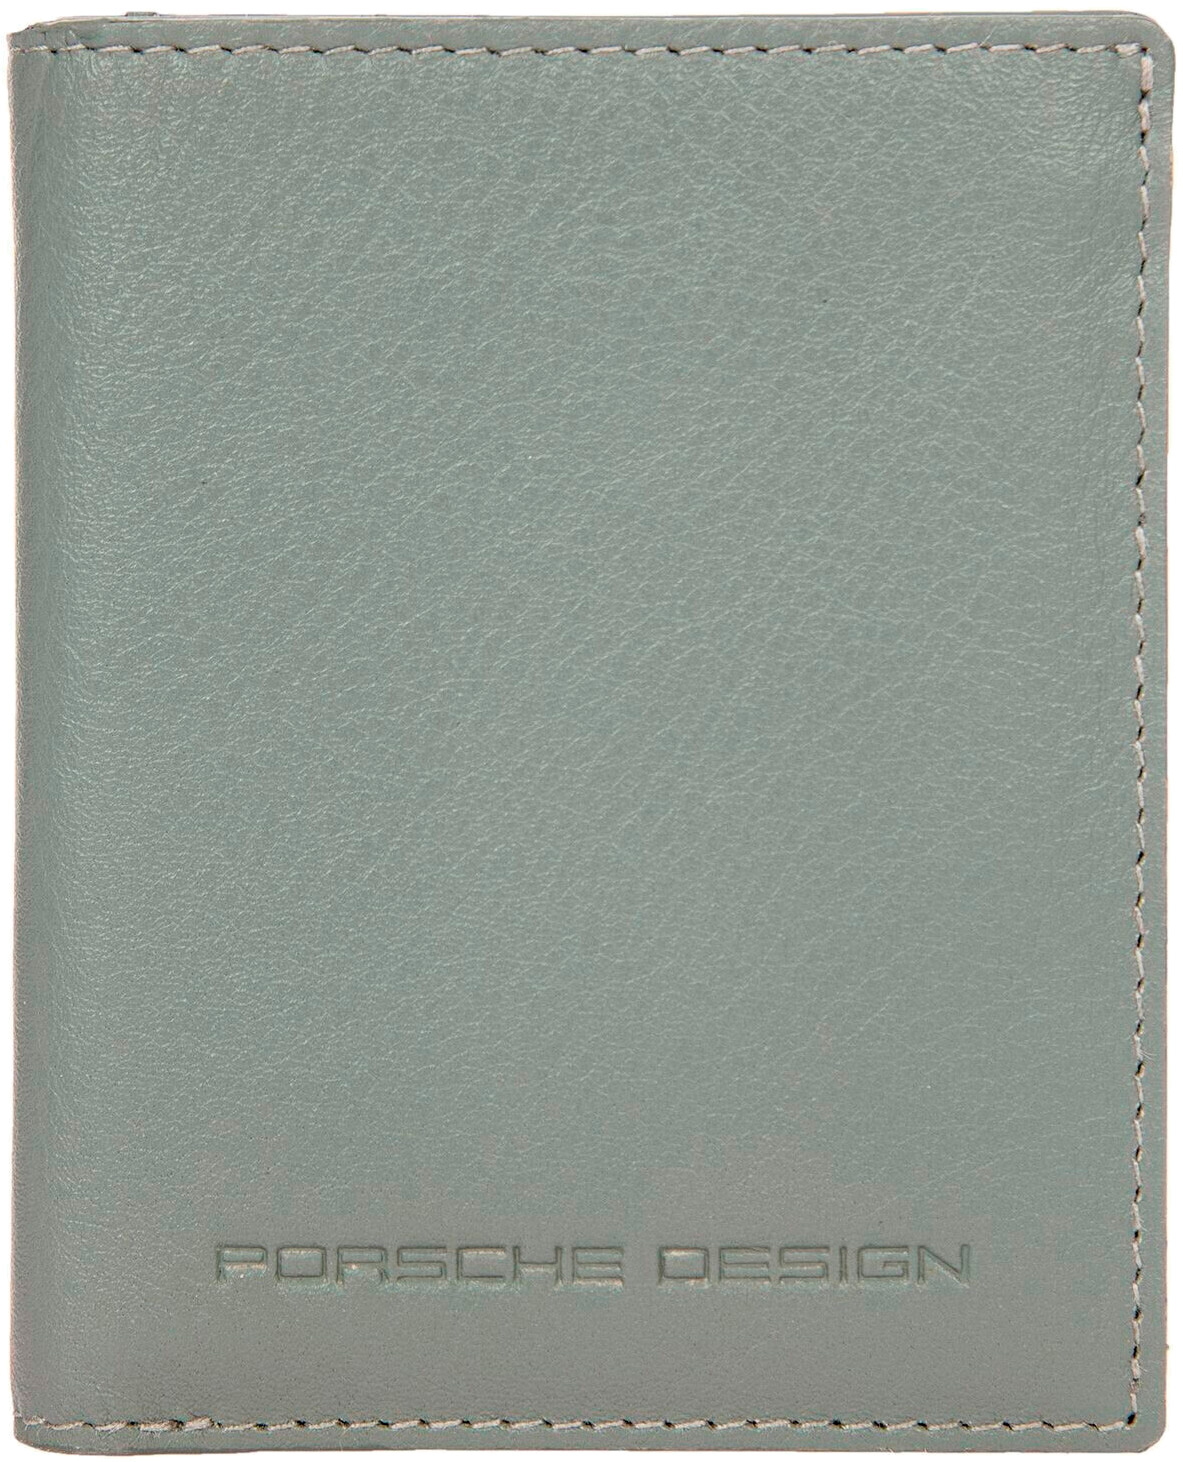    Porsche Design OSO09911.444